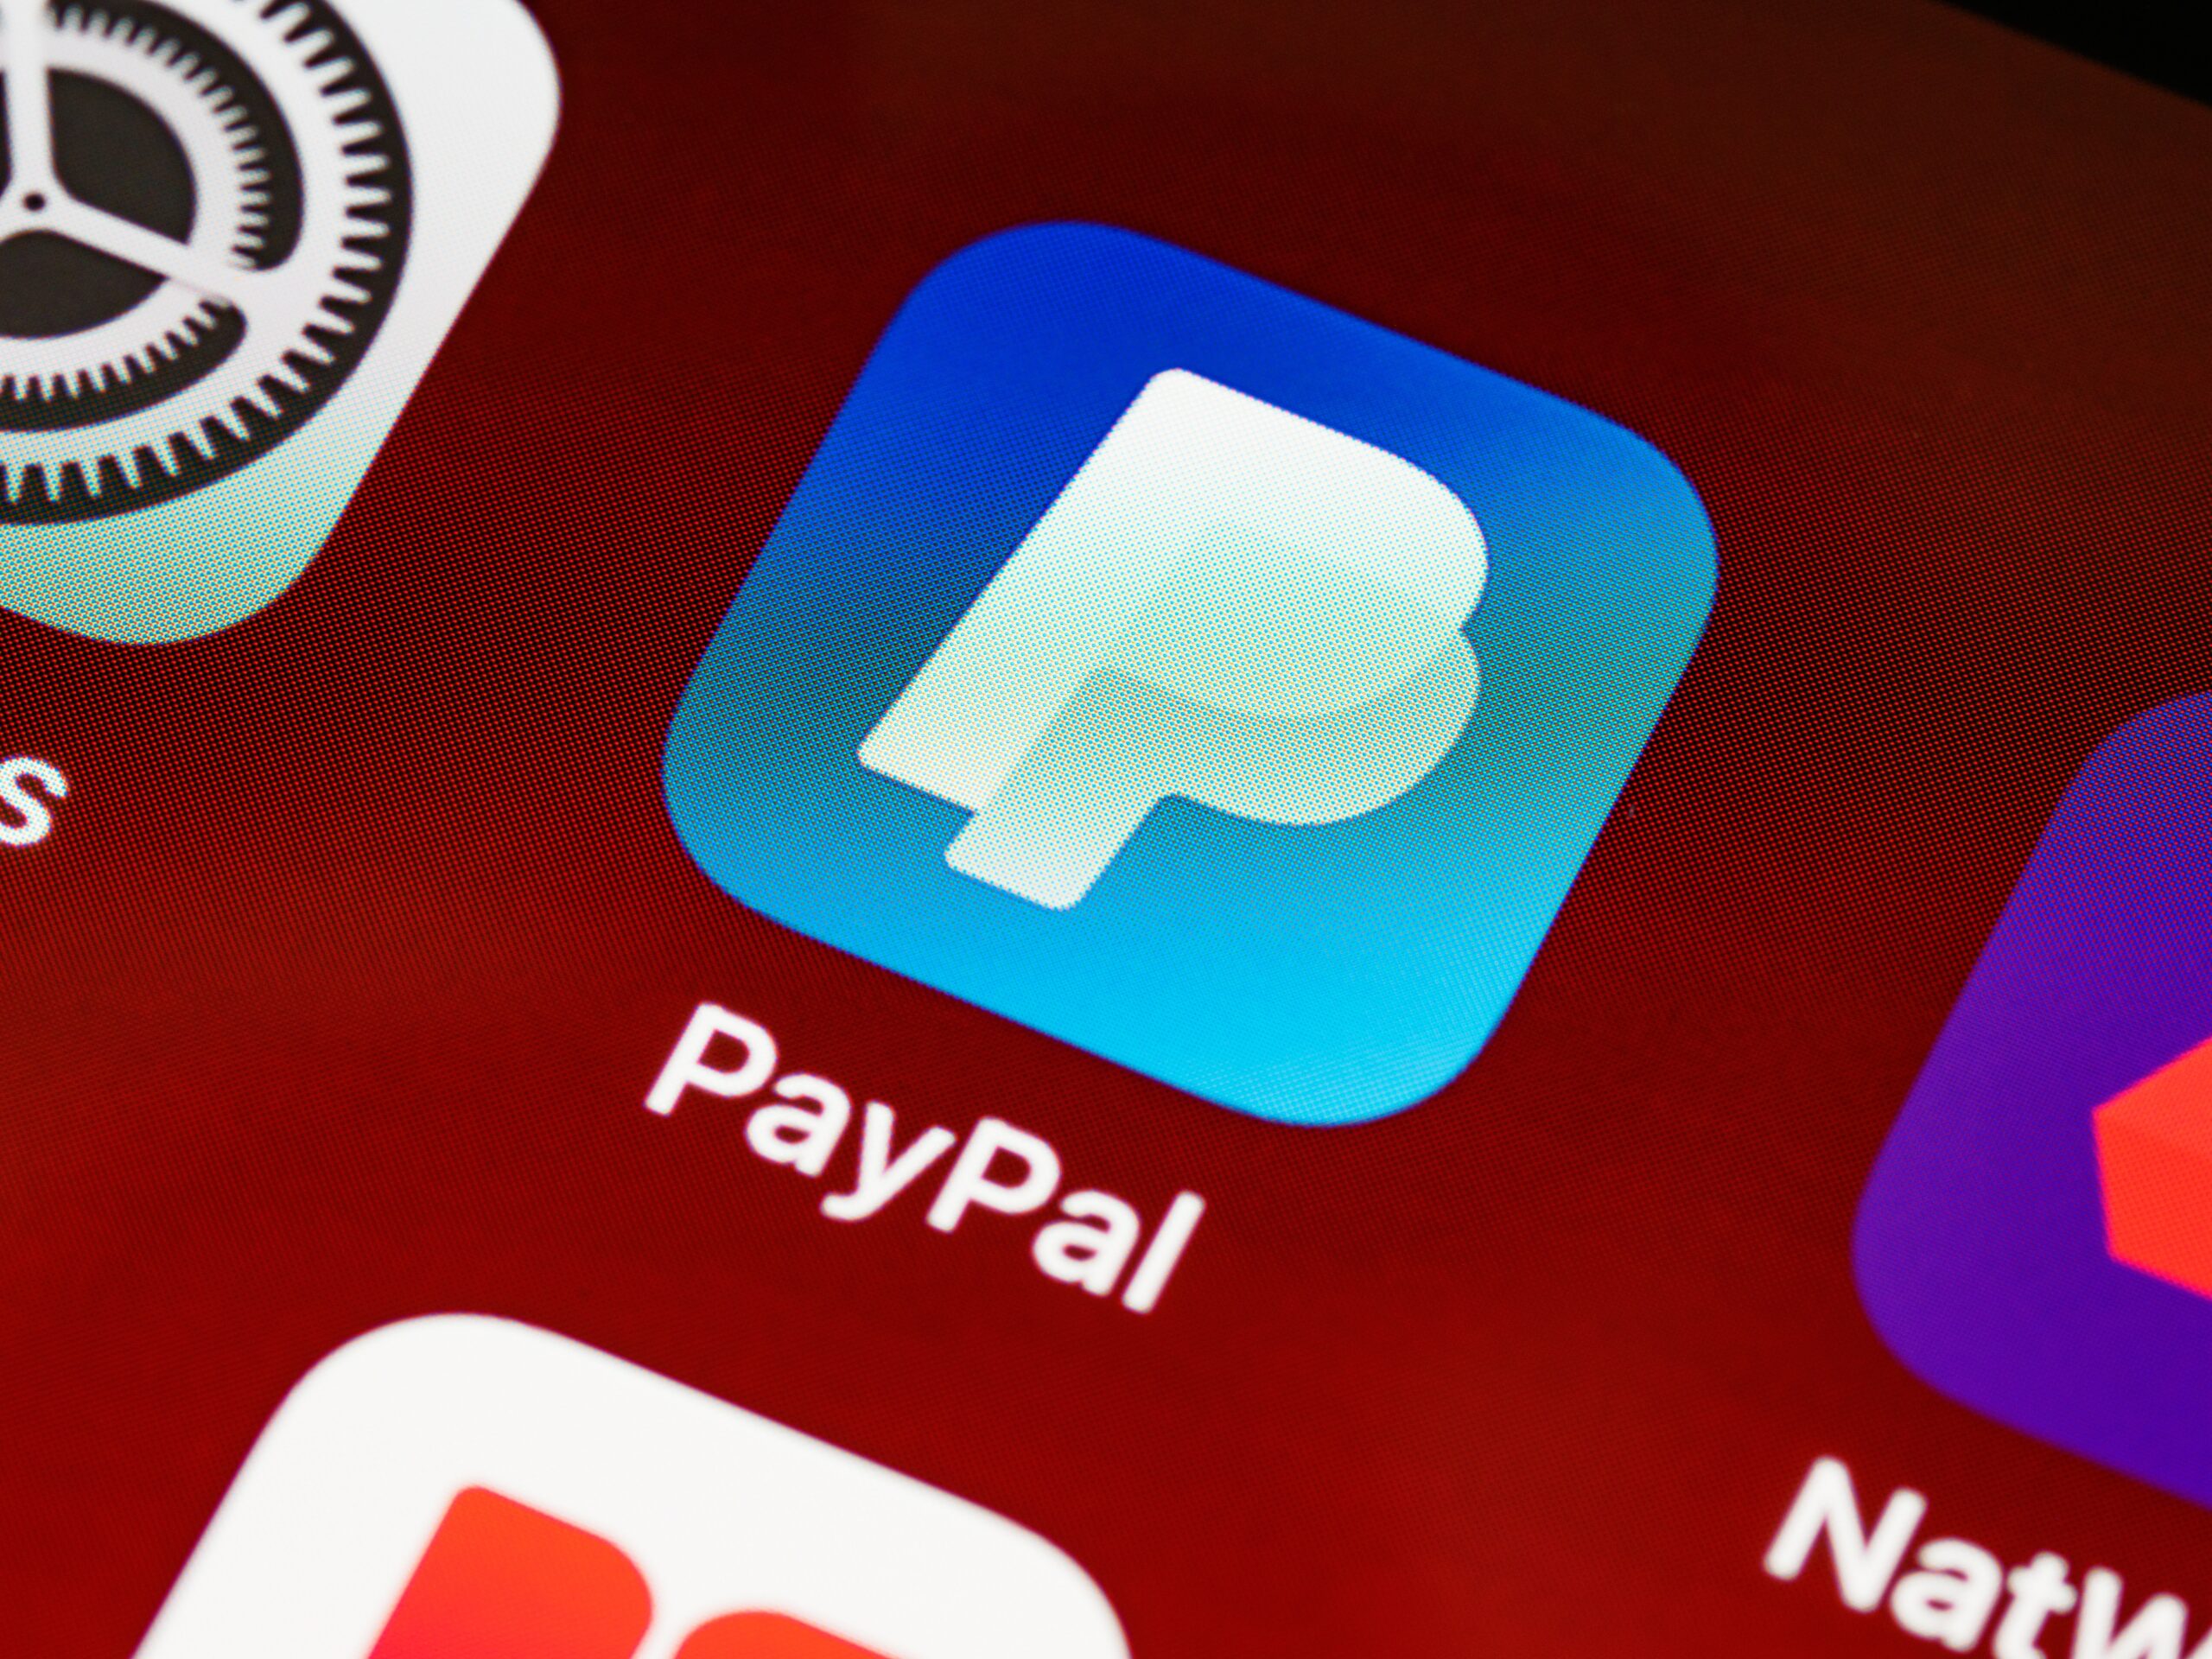 Crolla in borsa per Paypal dopo la chiusura degli account